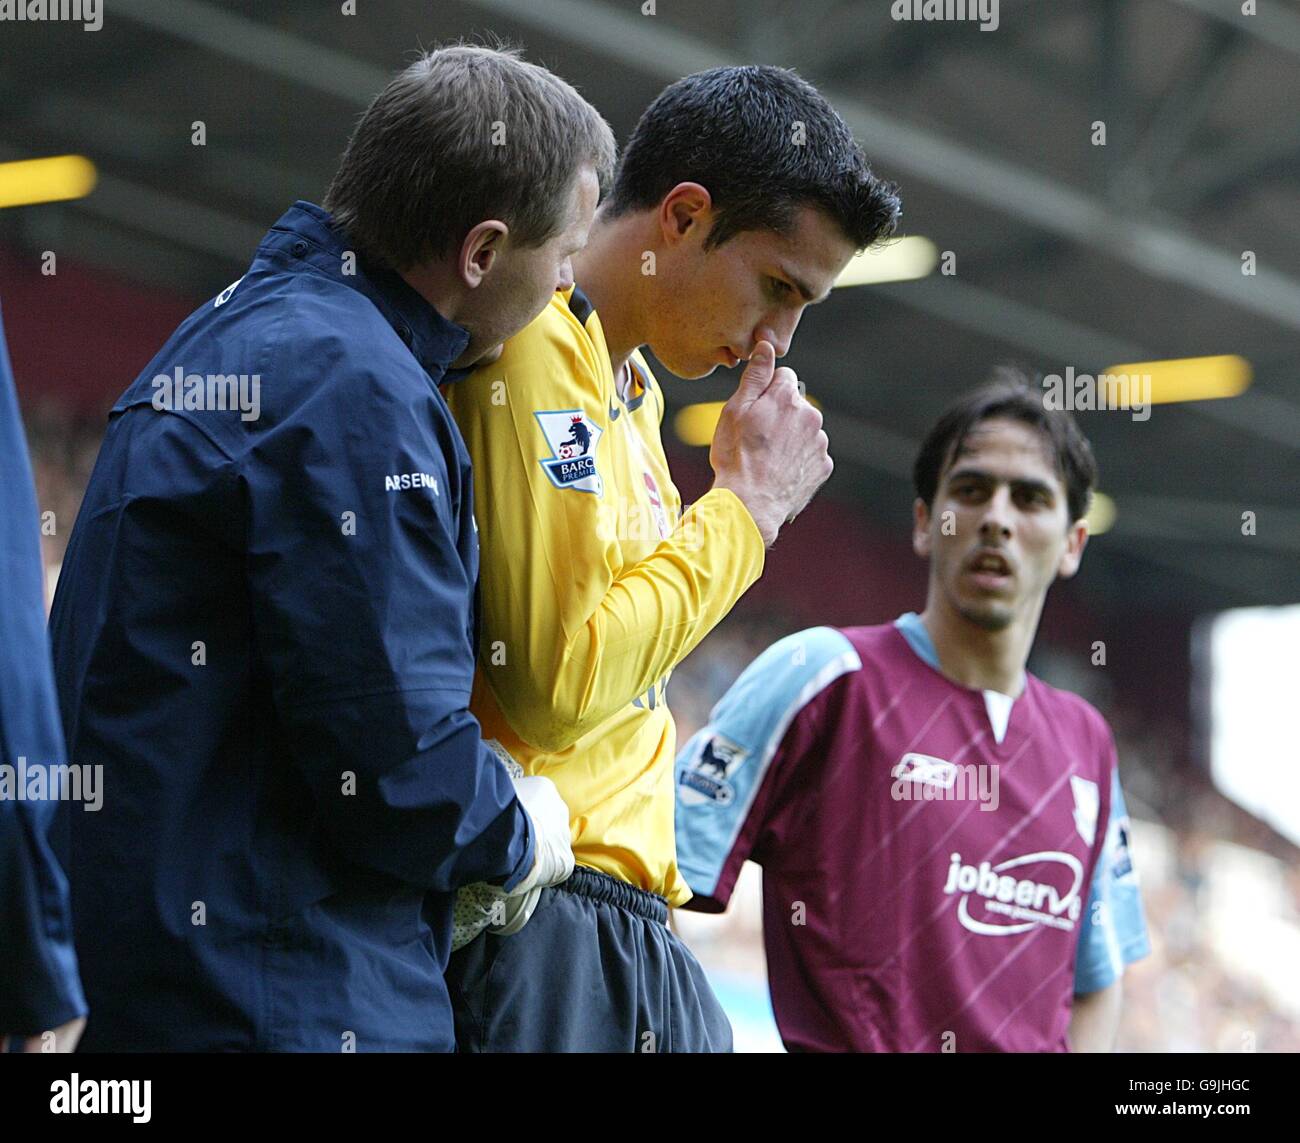 Calcio - fa Barclays Premiership - West Ham United / Arsenal - Upton Park. Robin Van Persie di Arsenal è rimasto ferito dopo essere stato colpito da un oggetto della folla Foto Stock